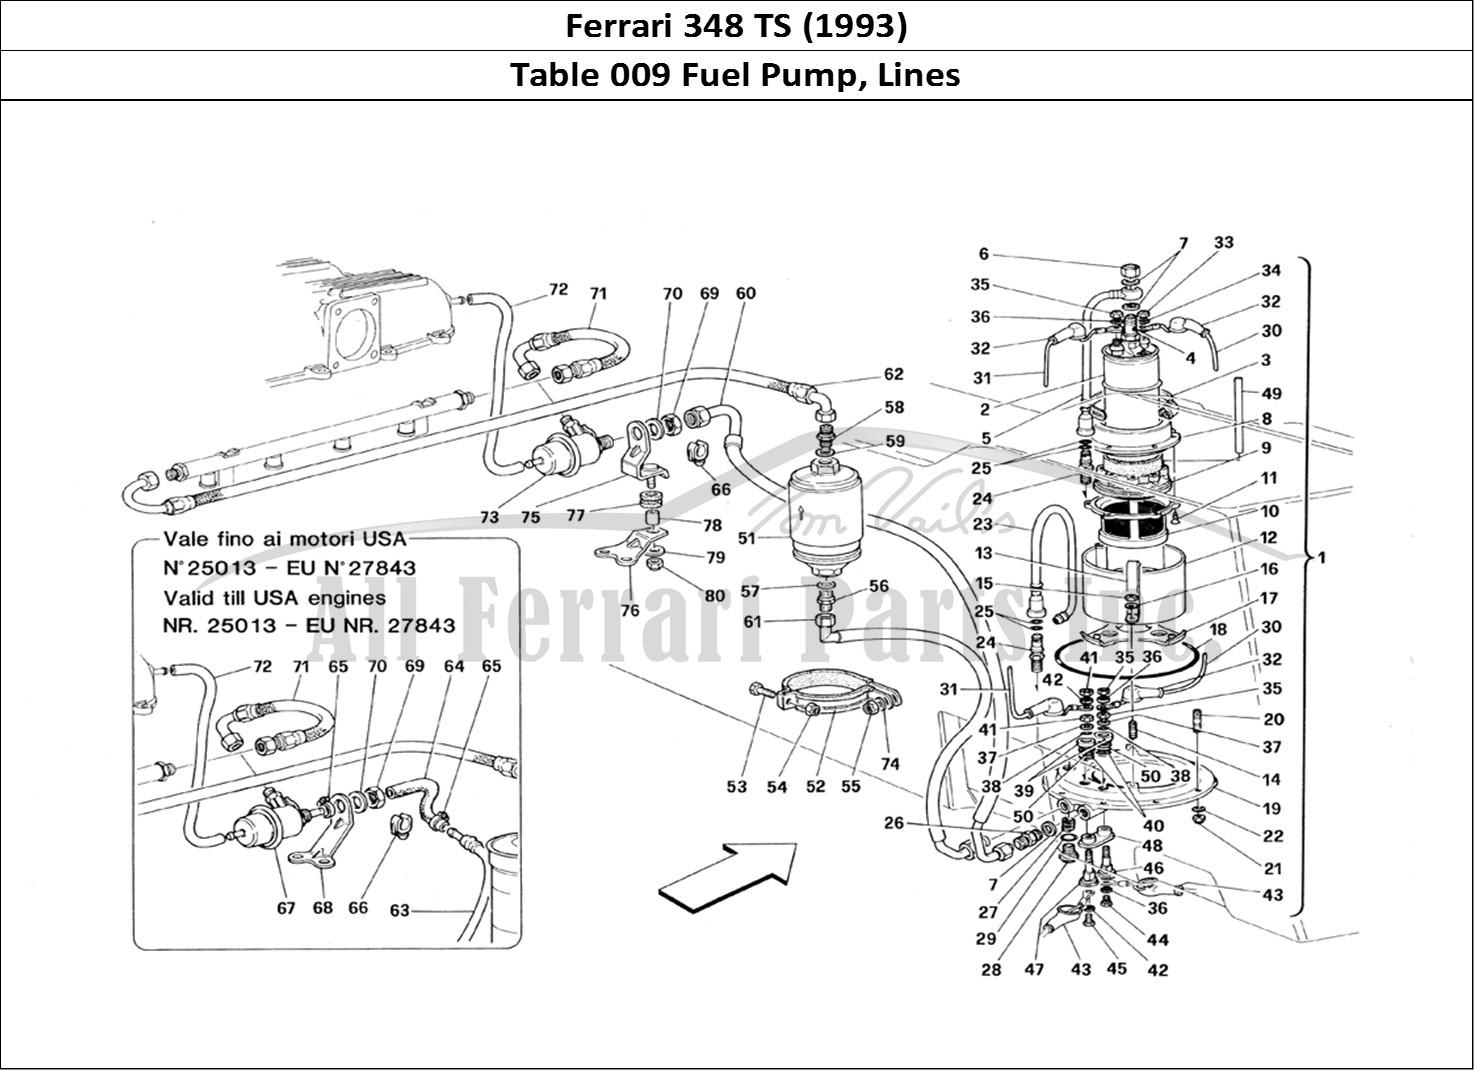 Ferrari Parts Ferrari 348 TB (1993) Page 009 Fuel Pump and Pipes